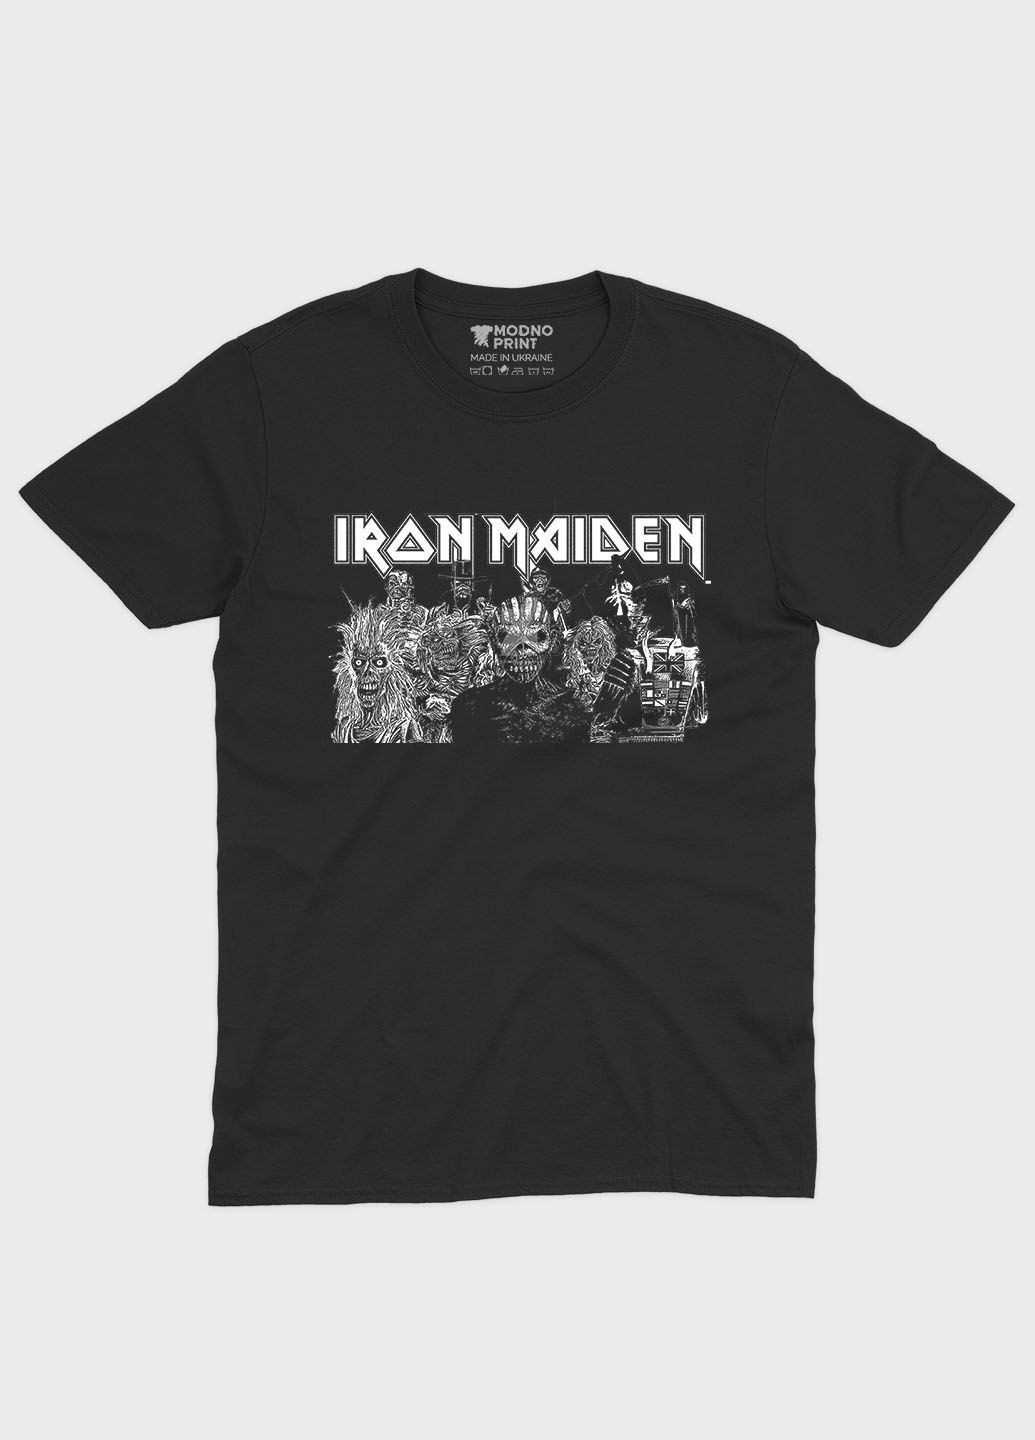 Черная мужская футболка с рок-принтом "iron maiden" (ts001-2-bl-004-2-145) Modno